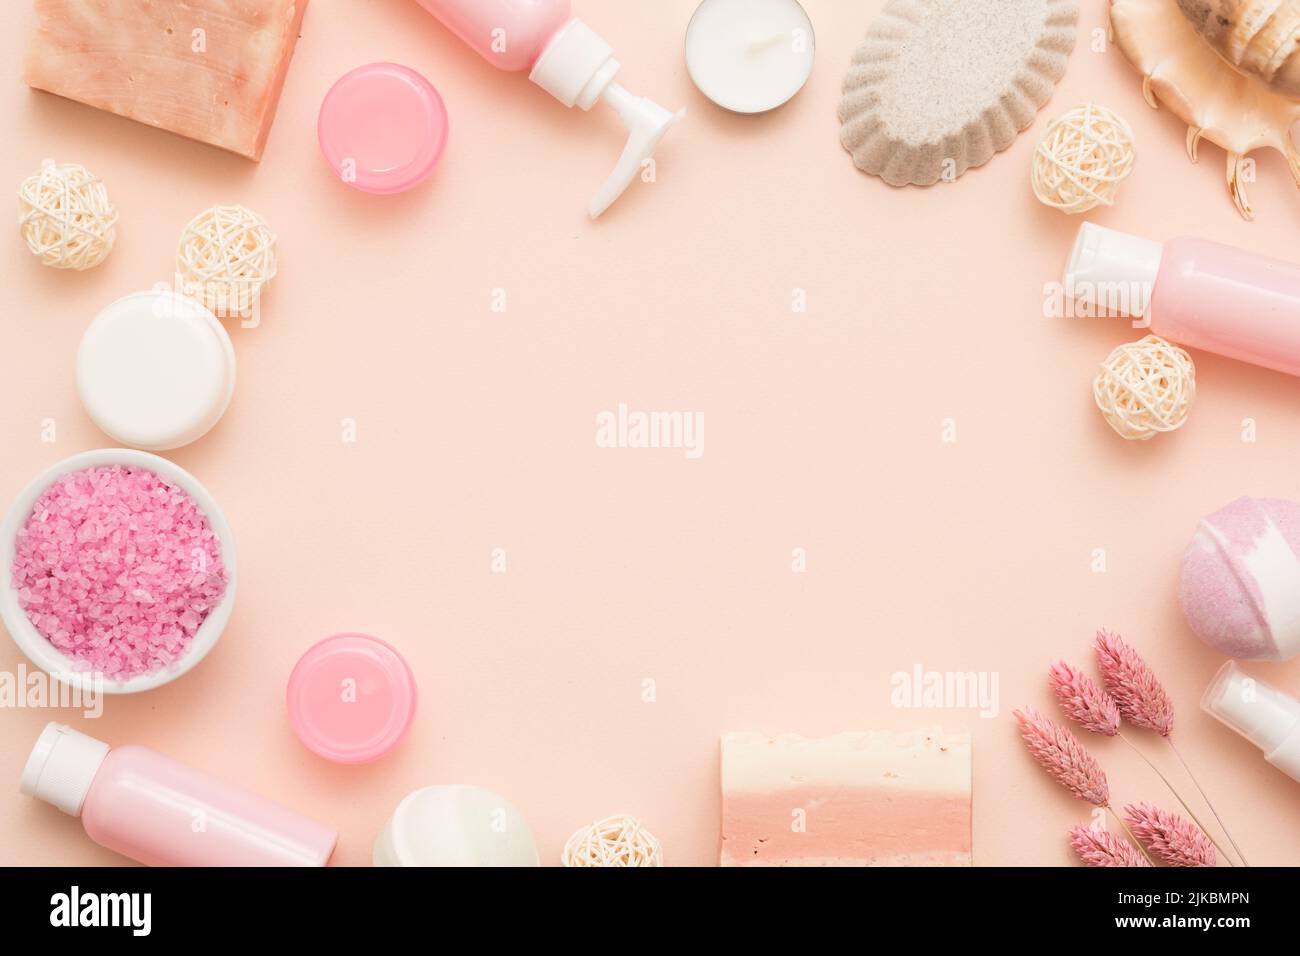 terapia de spa productos cosméticos para el cuidado corporal Foto de stock